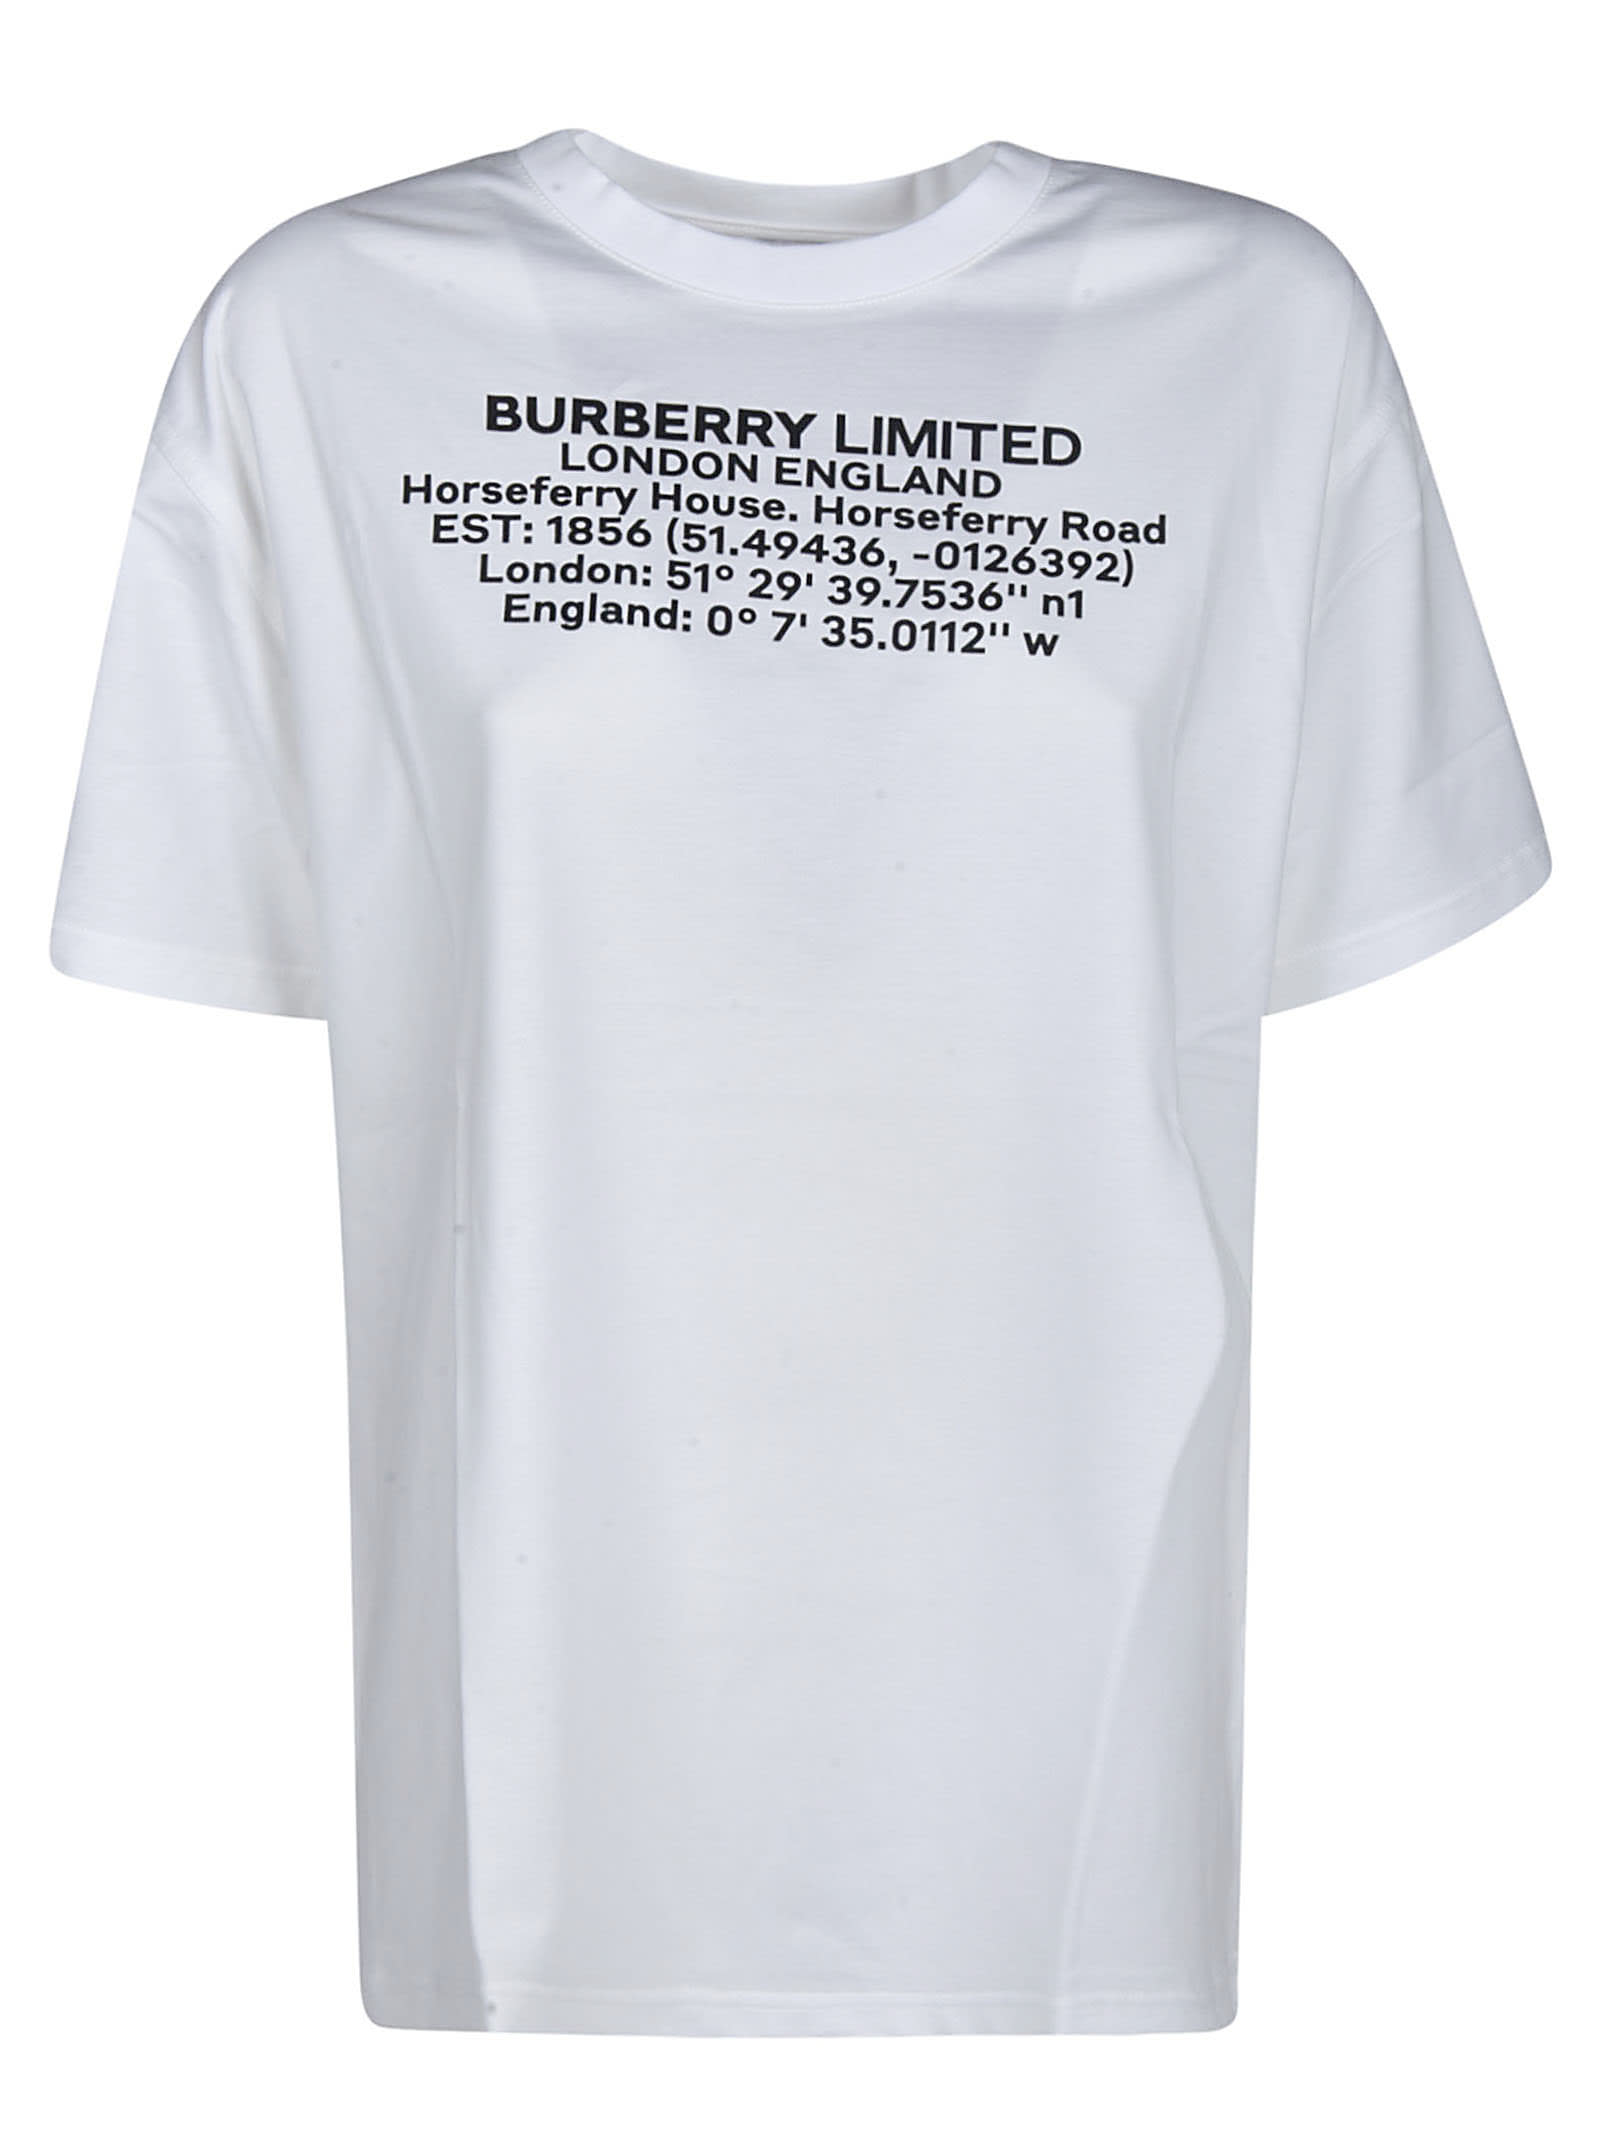 burberry short sleeve t shirt